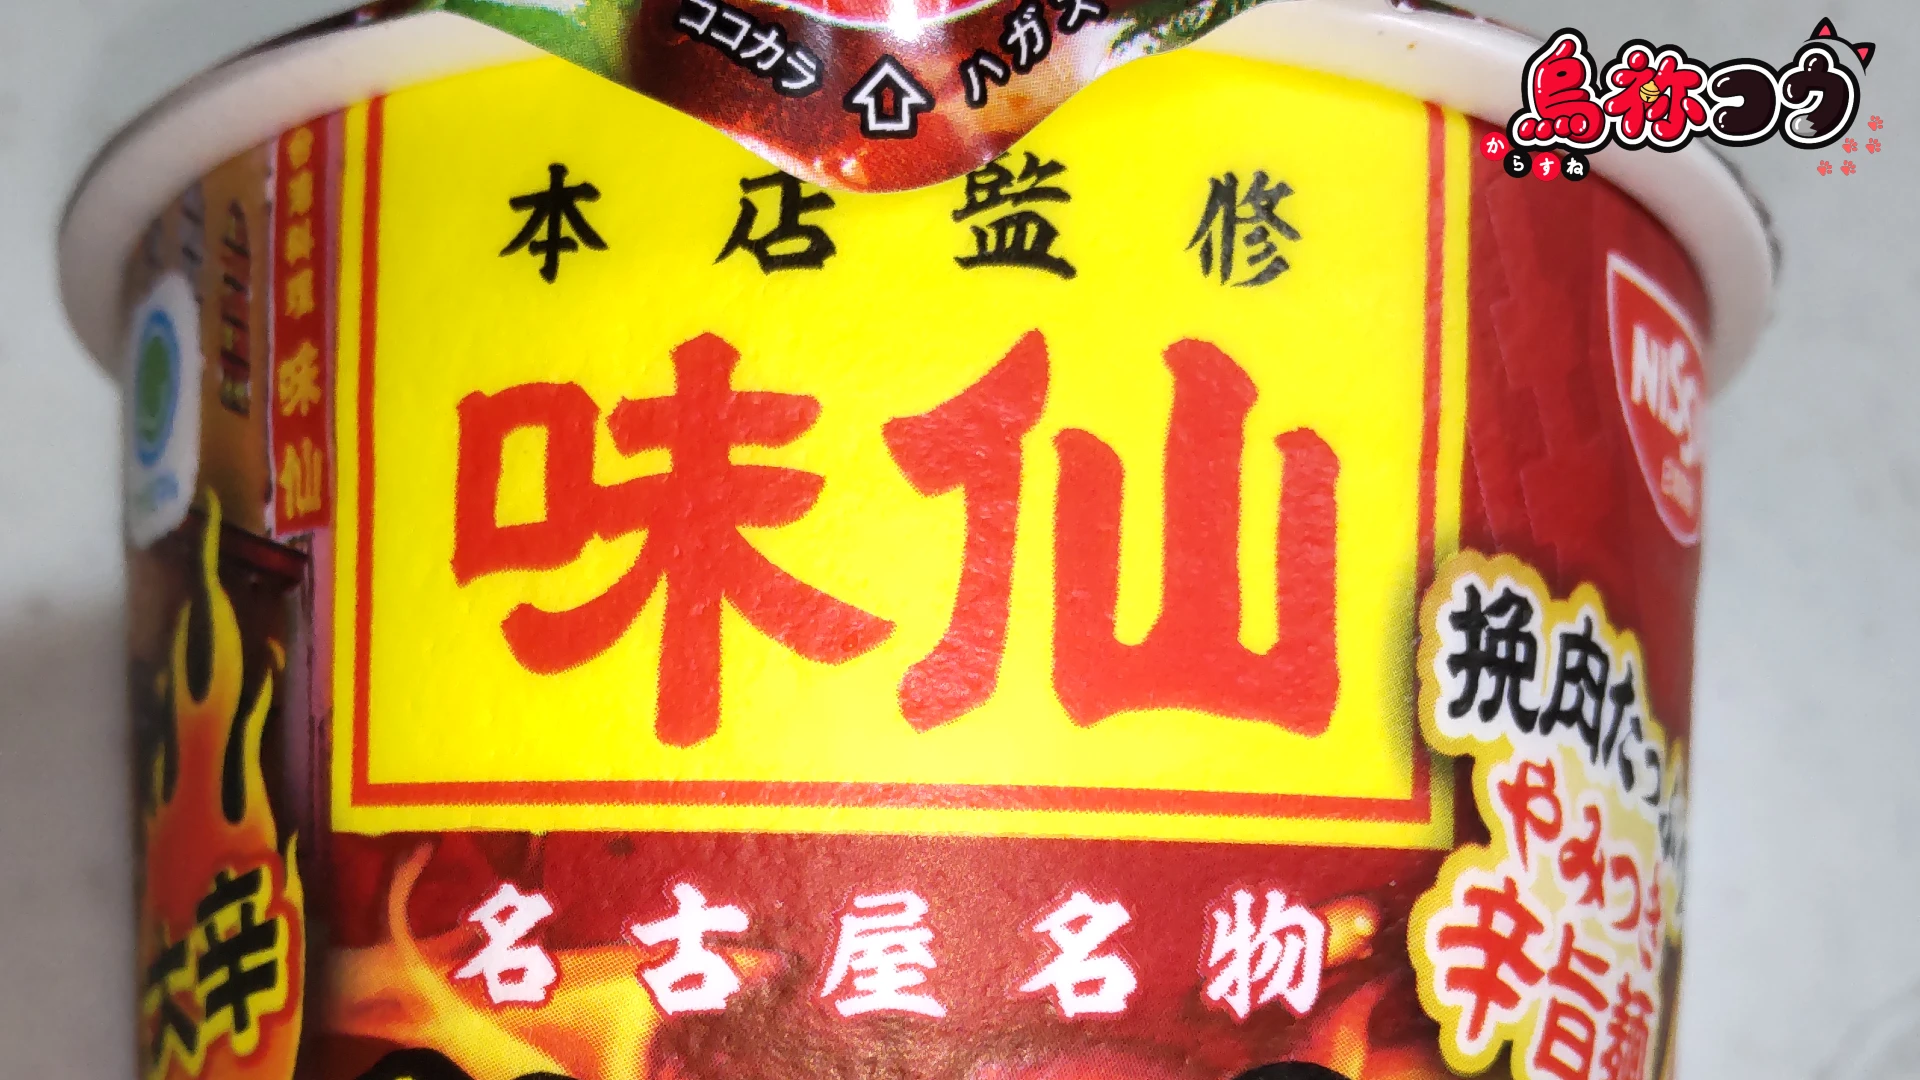 ファミマルの味仙 台湾ラーメンに描かれた味仙のロゴです